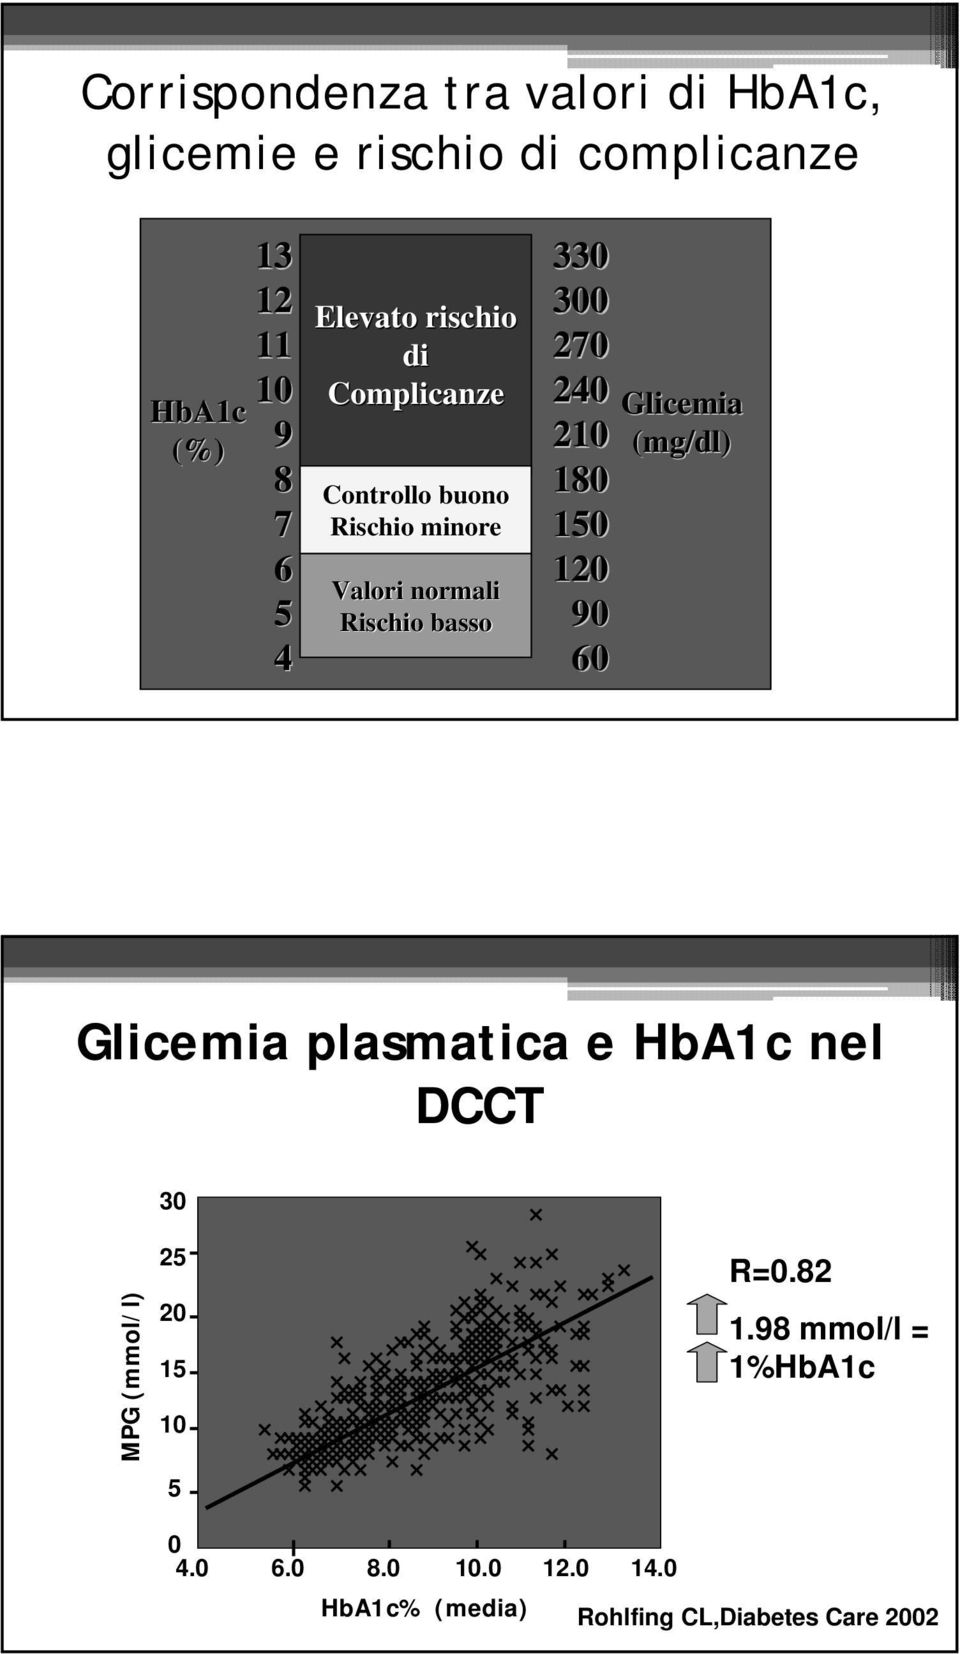 120 Valori normali 5 Rischio basso 90 4 60 Glicemia plasmatica e HbA1c nel DCCT 30 MPG (mmol/l) 25 20 15